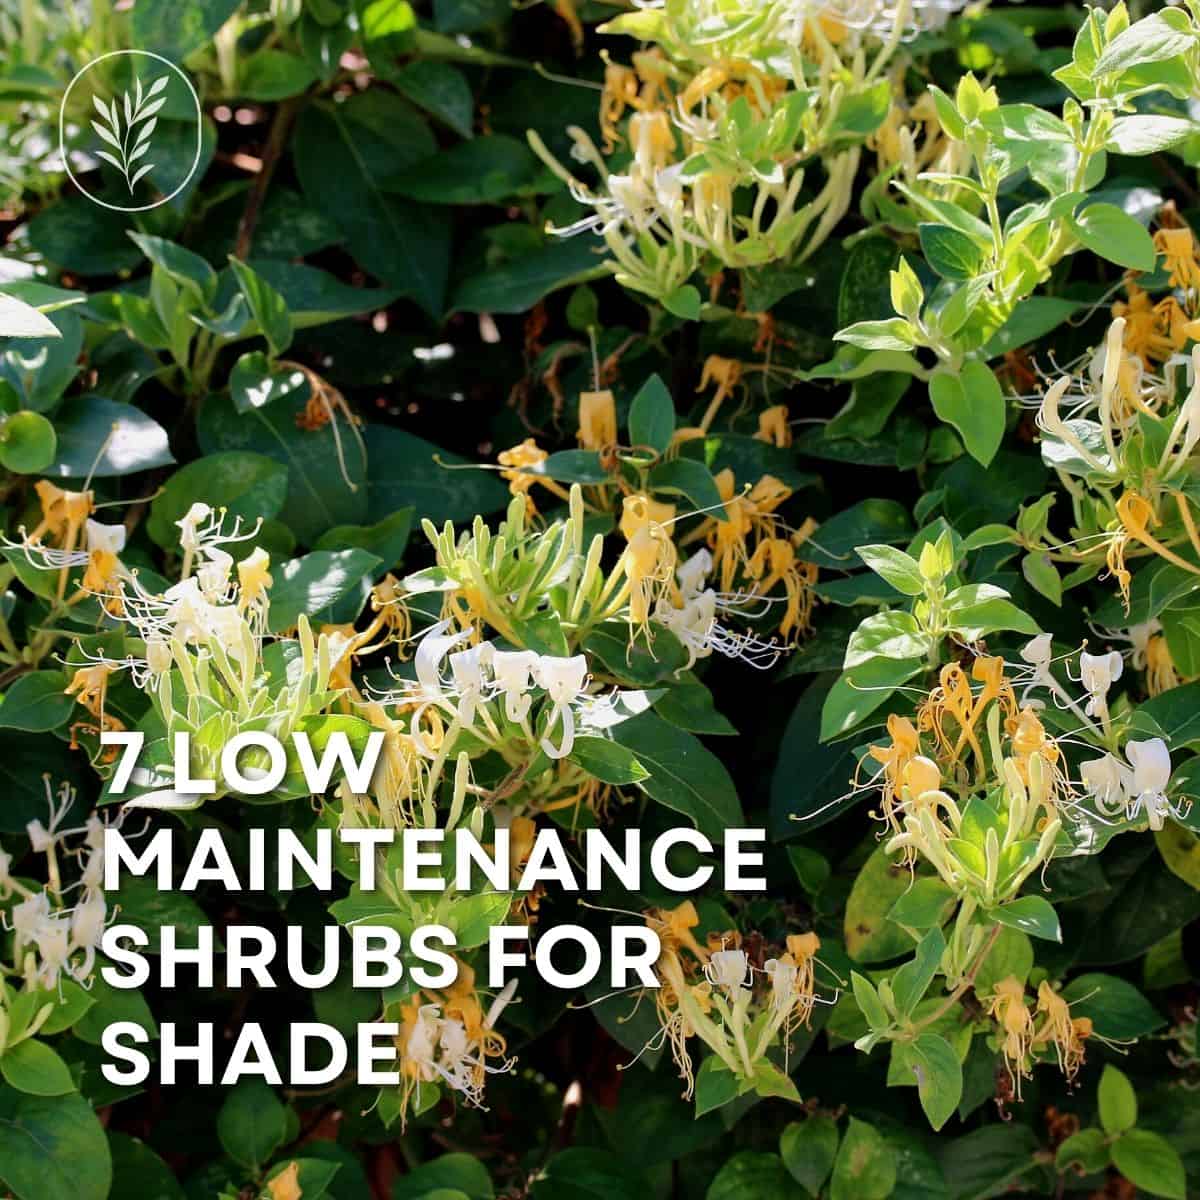 7 low maintenance shrubs for shade via @home4theharvest